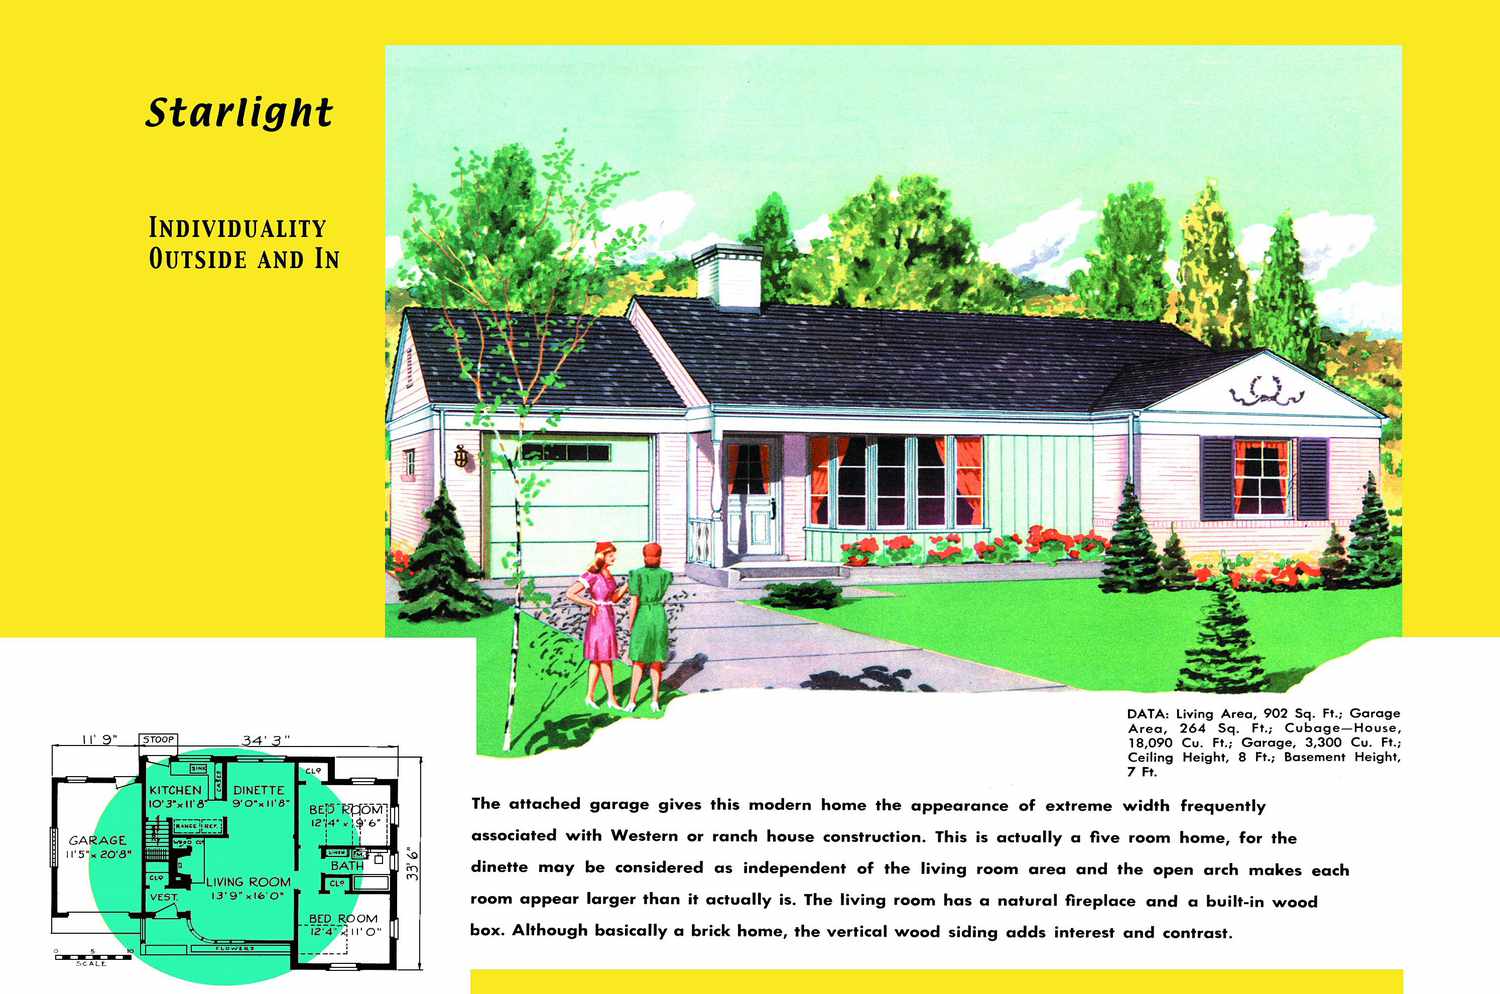 Planta baixa dos anos 1950 e renderização da casa em estilo rancho chamada Starlight com garagem anexa